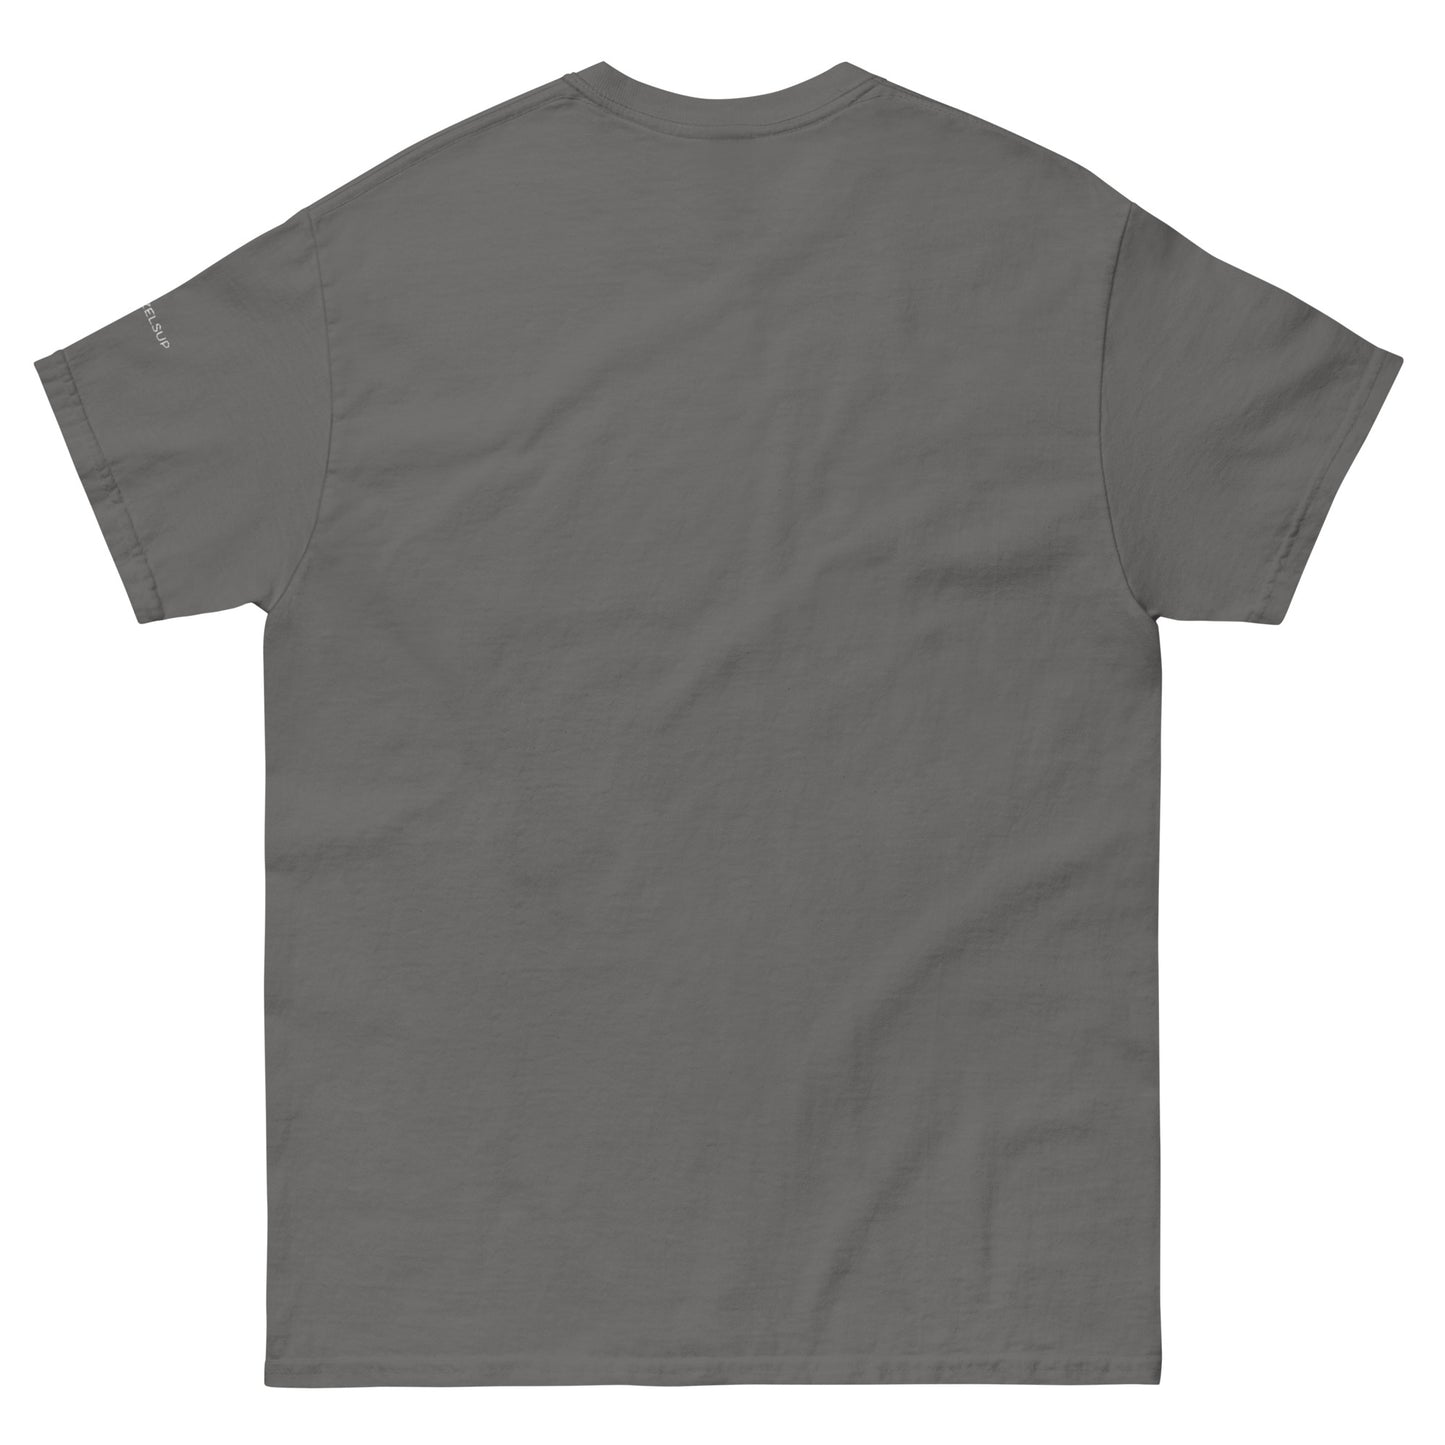 Foiler unser klassisches Herren-T-Shirt